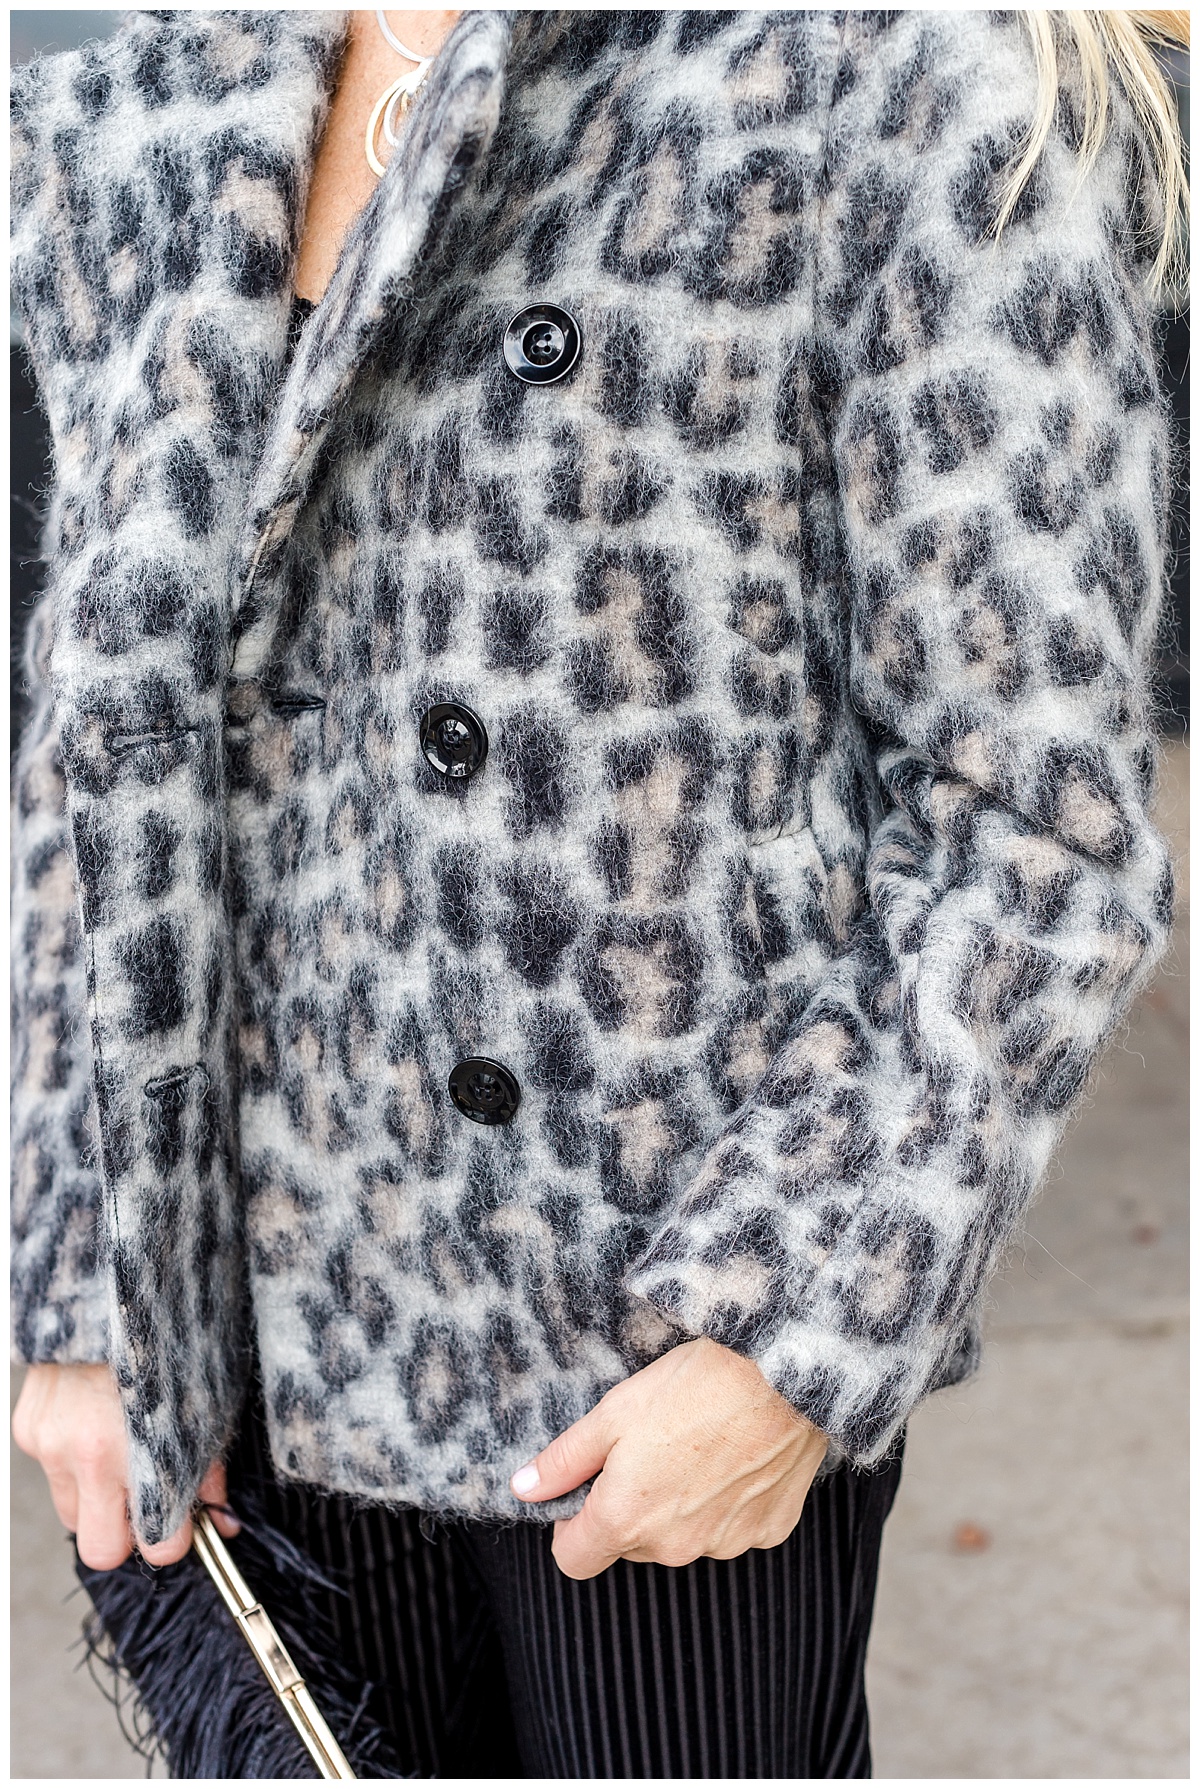 Lauren B jumpsuit and cheetah coat_1669.jpg